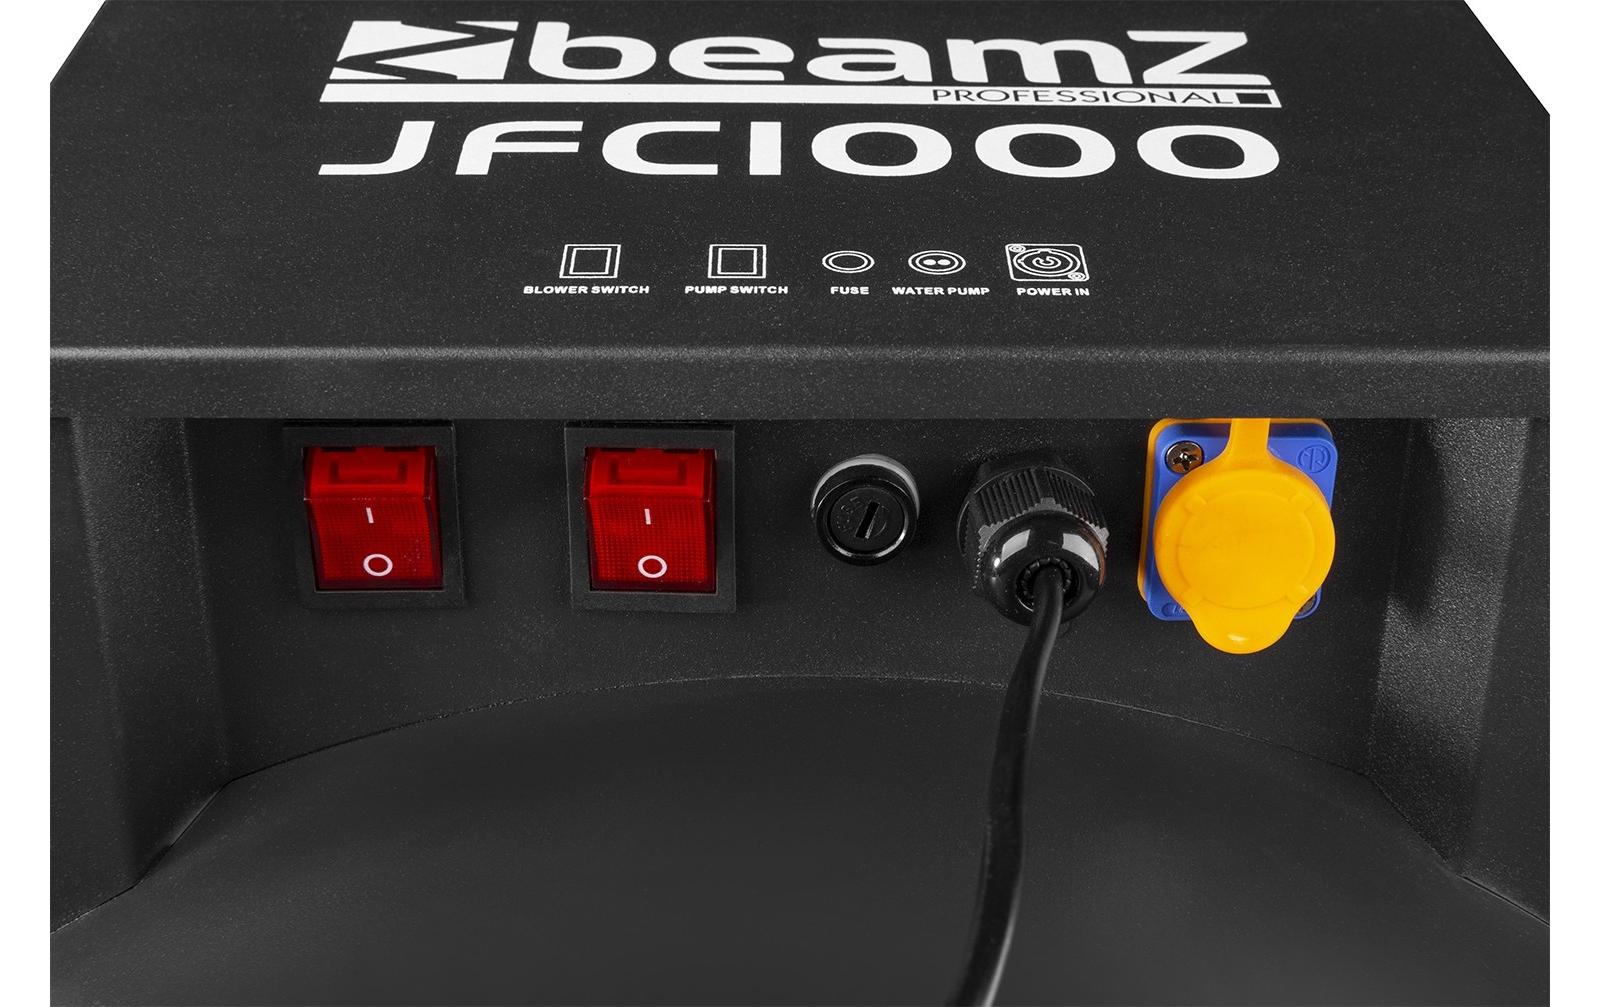 BeamZ Pro Schaumkanone JFC1000